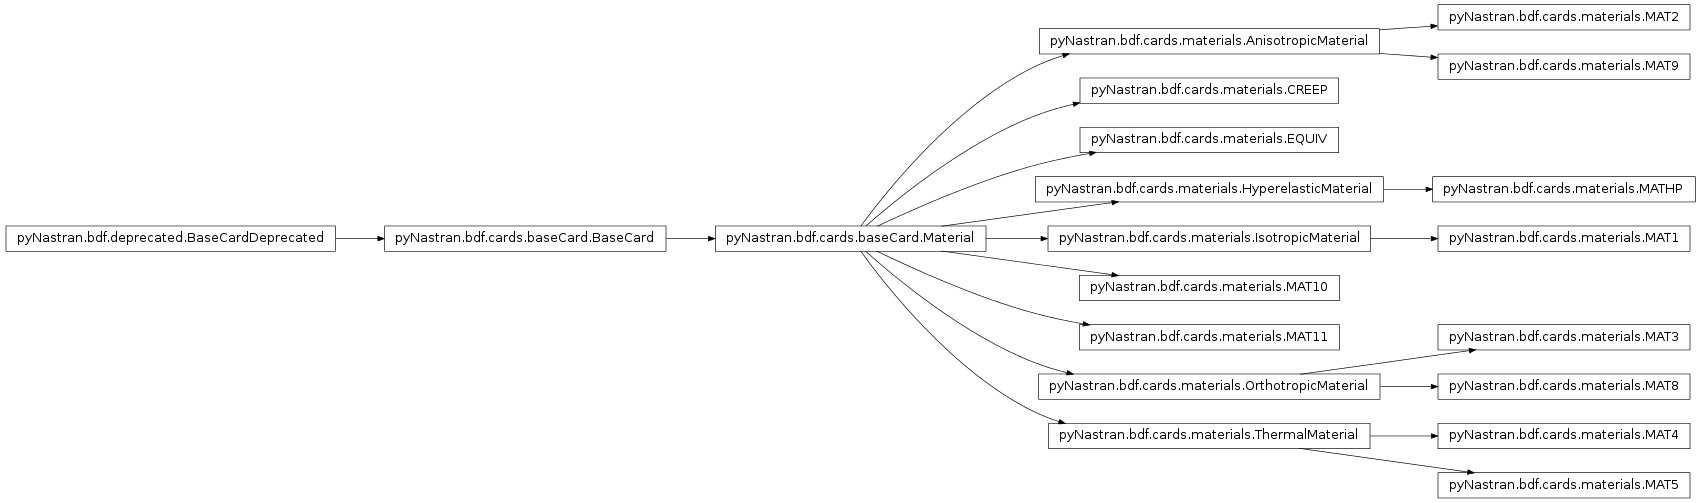 Inheritance diagram of pyNastran.bdf.cards.materials